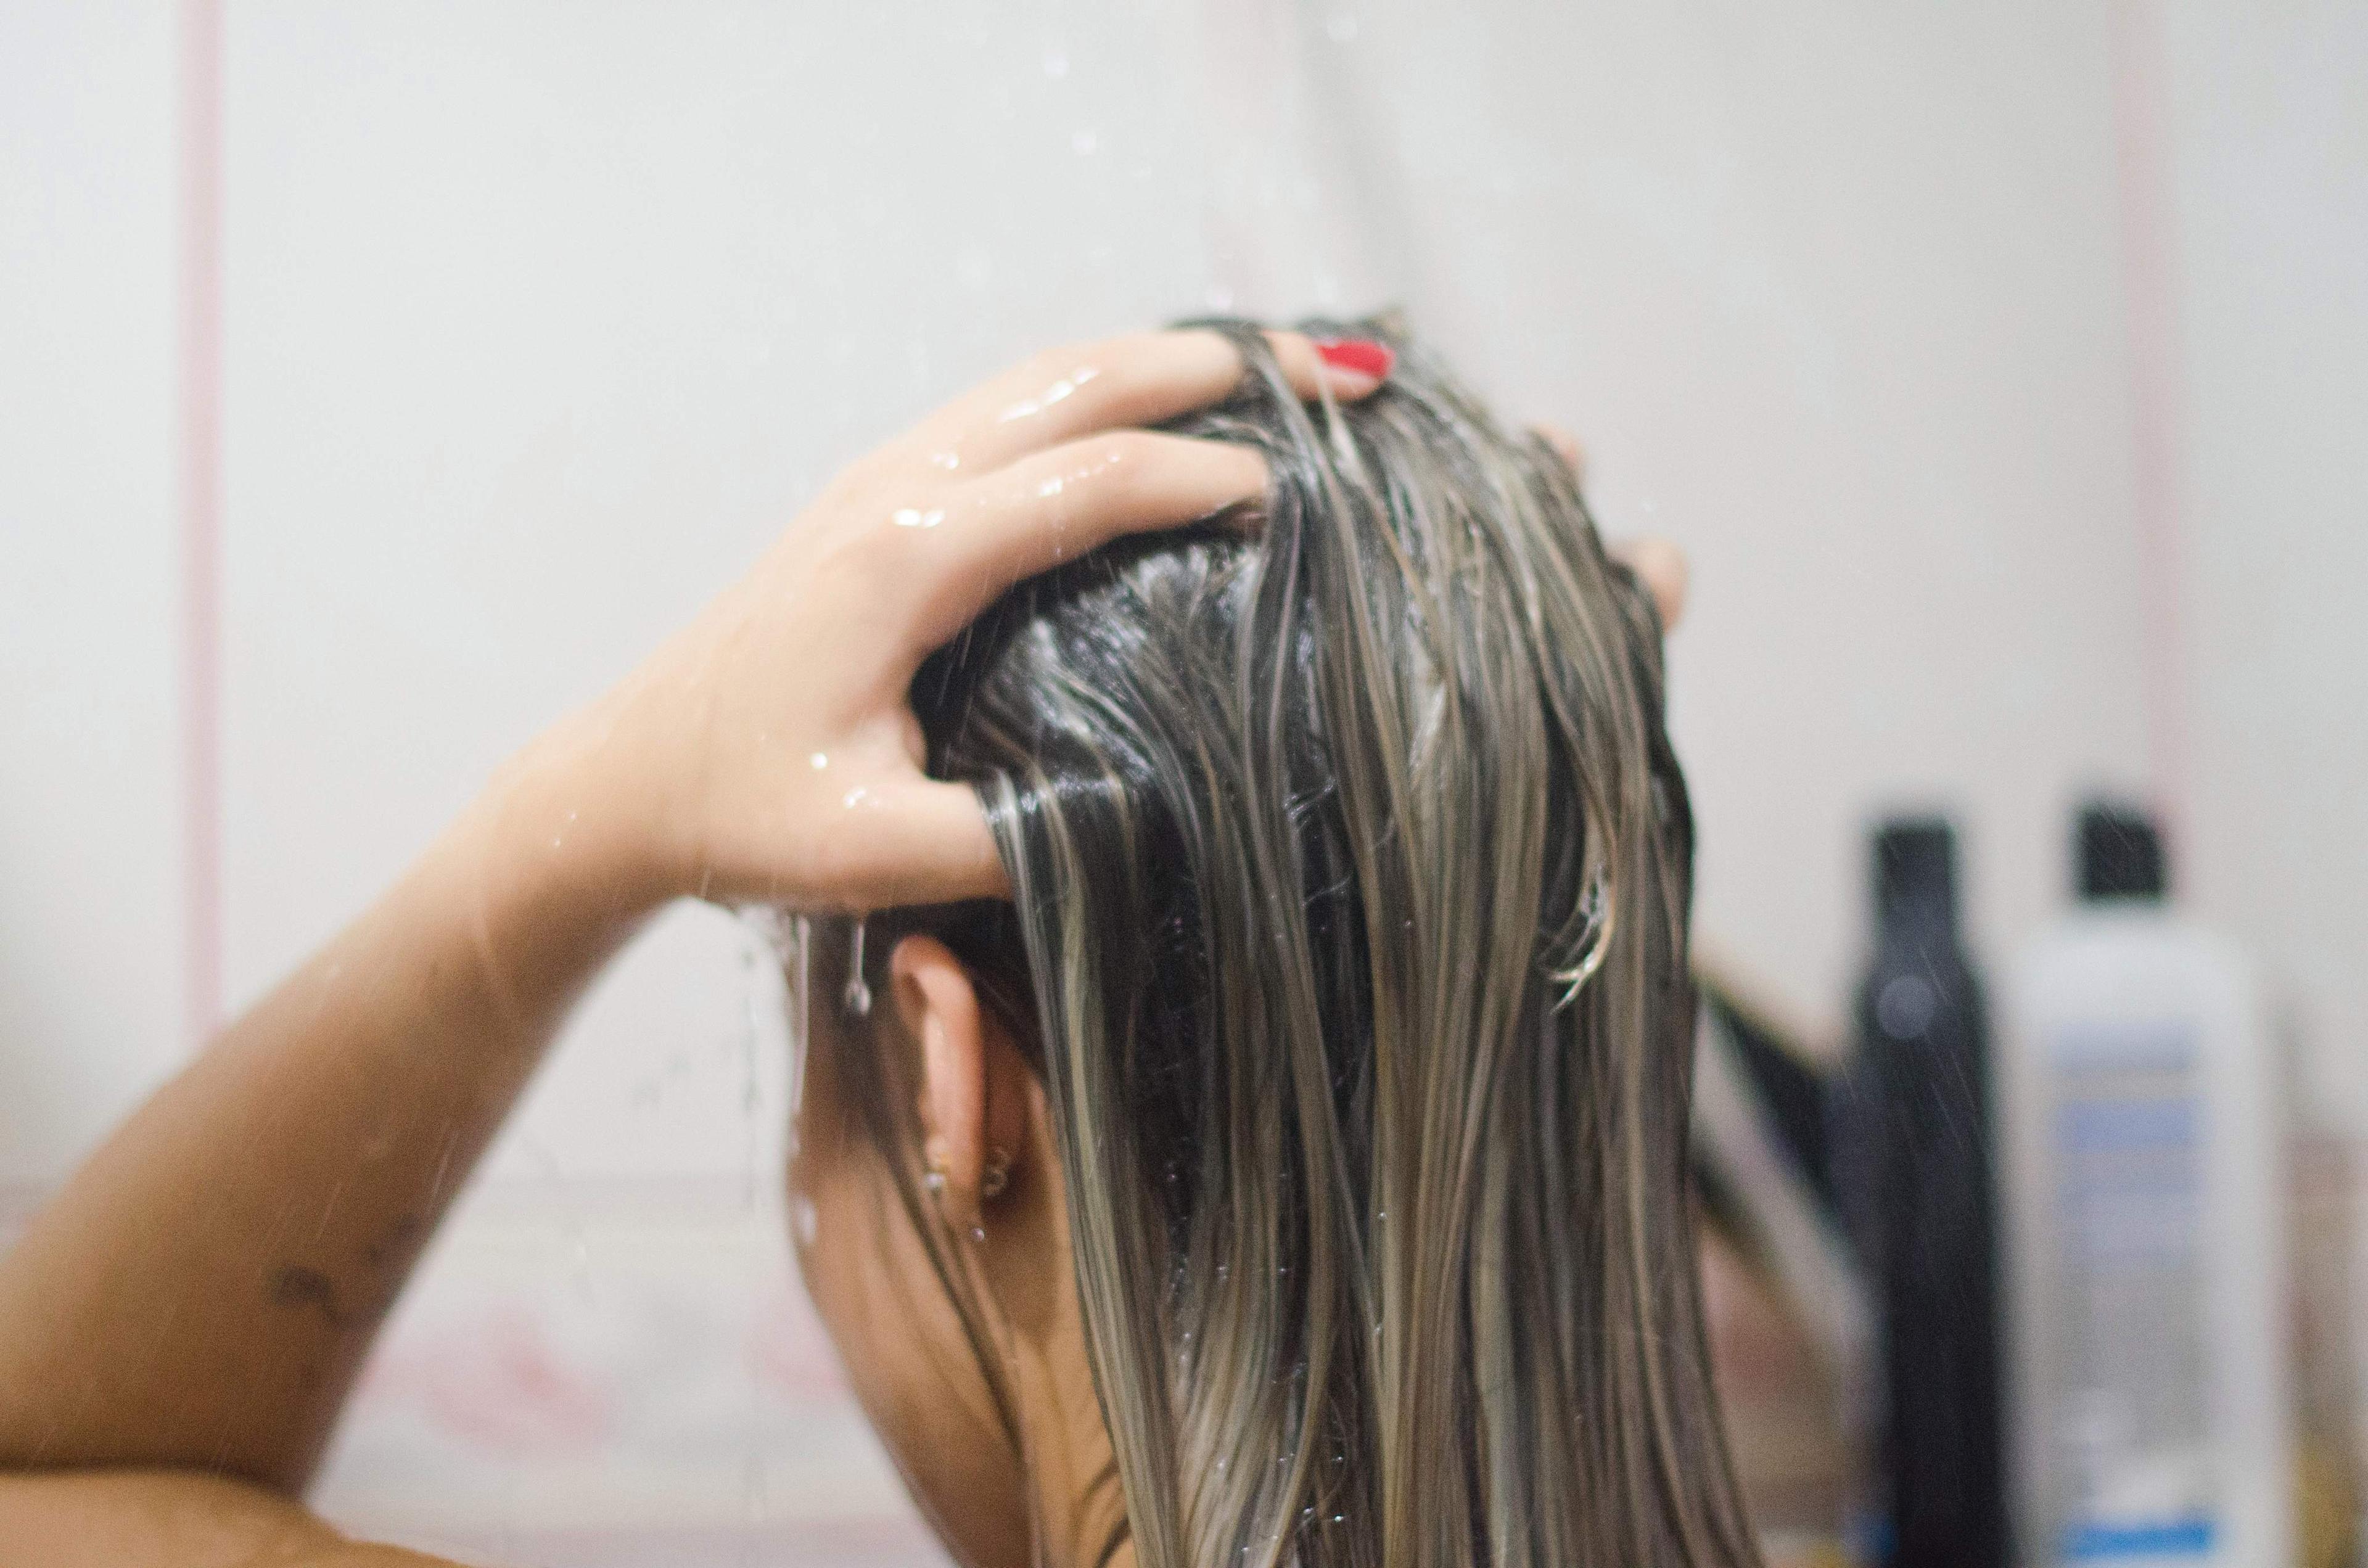 Vezanje mokre kose izaziva oštećenje - Avaz